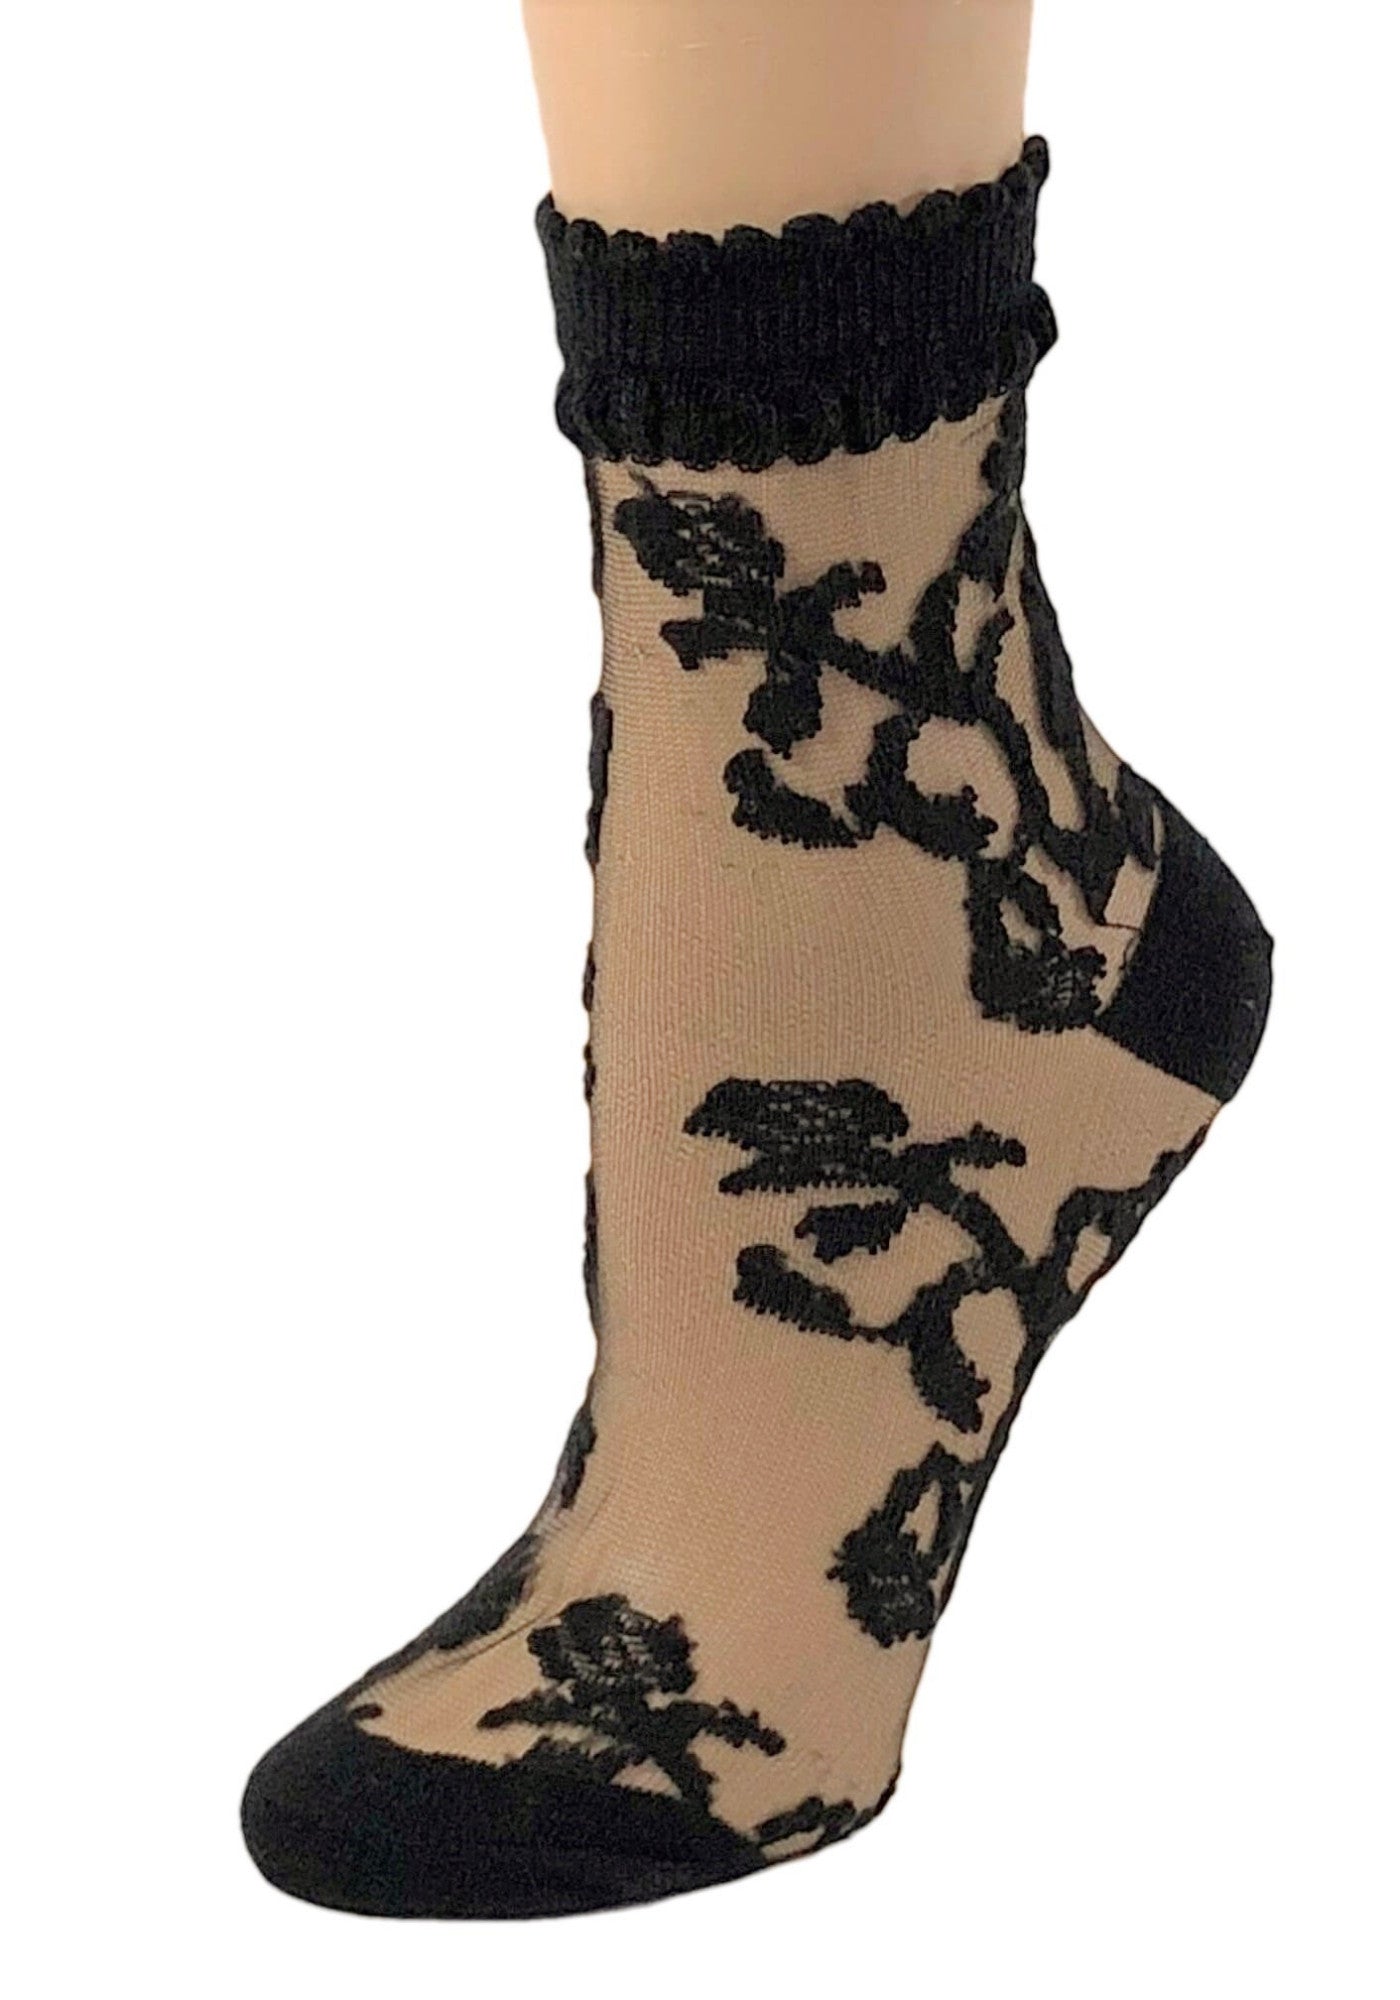 Charming Black Flowers Sheer Socks - Global Trendz Fashion®